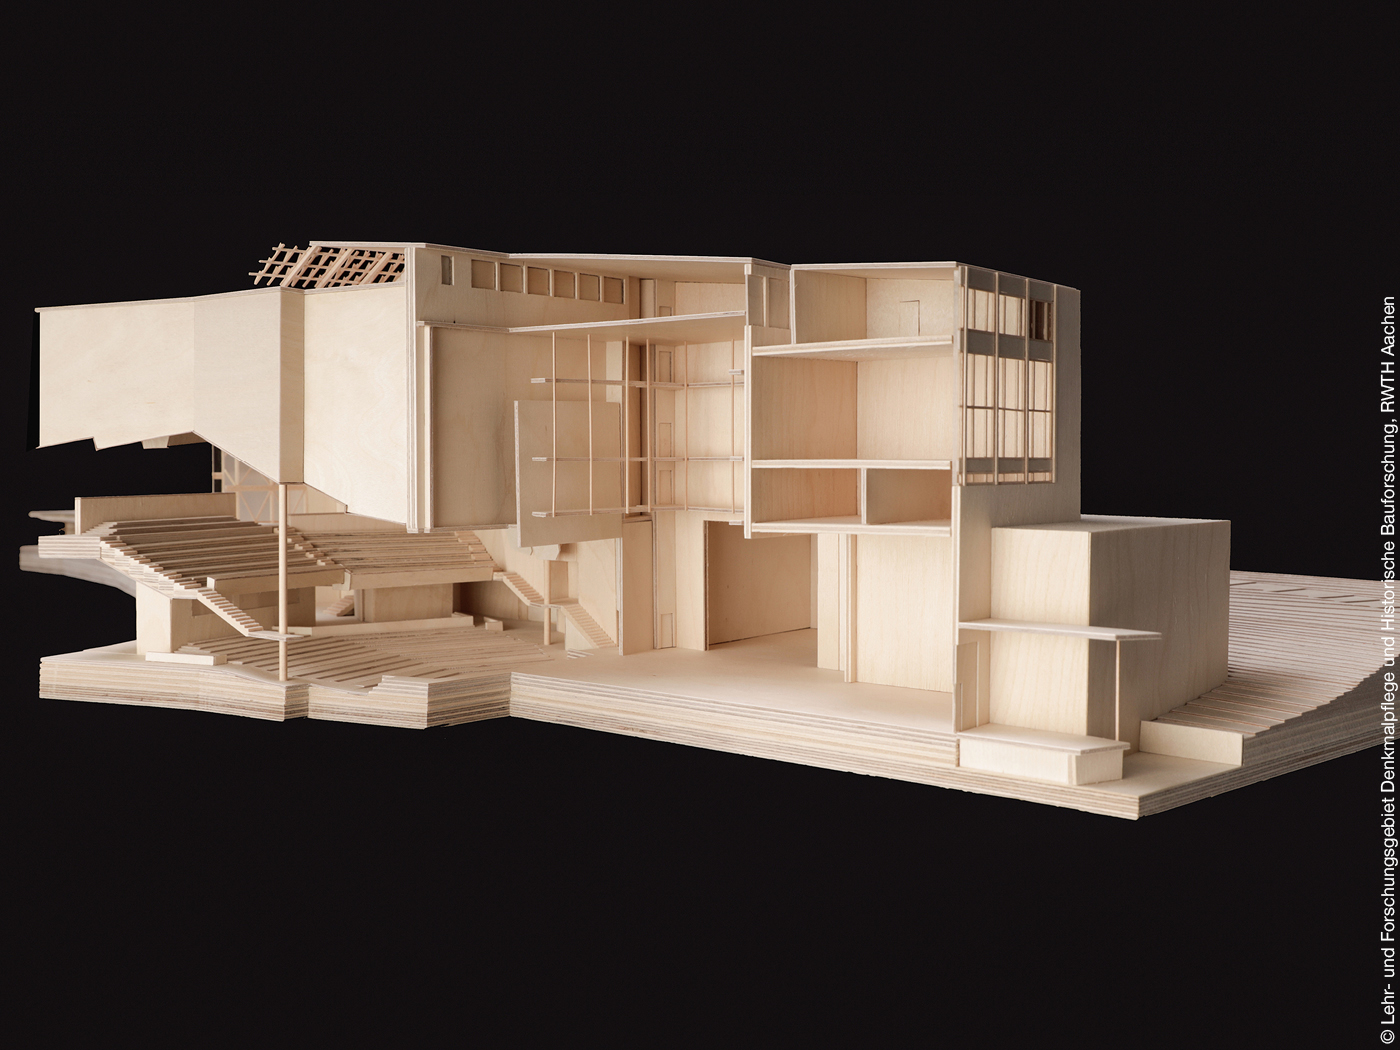 Holzmodell des Scharoun Theaters in Wolfsburg mit seitlichem Blick in die Innenräume